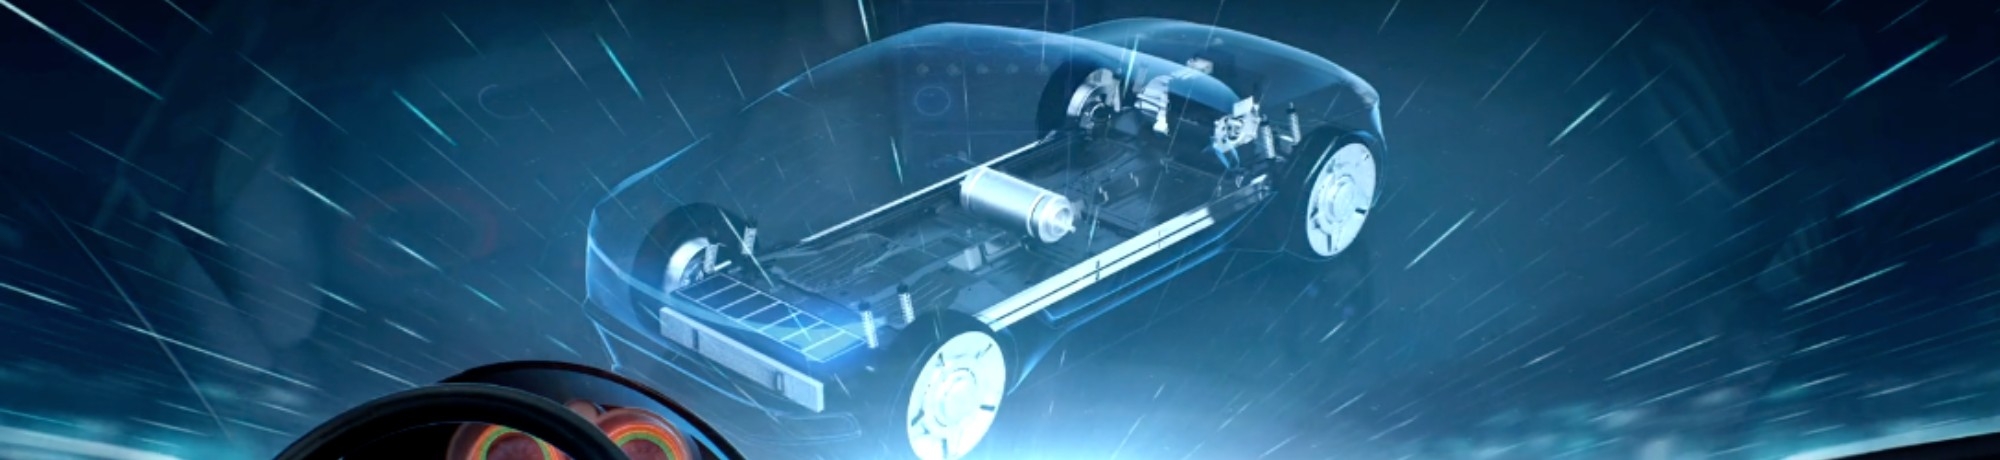 Futuristic car in a rendering